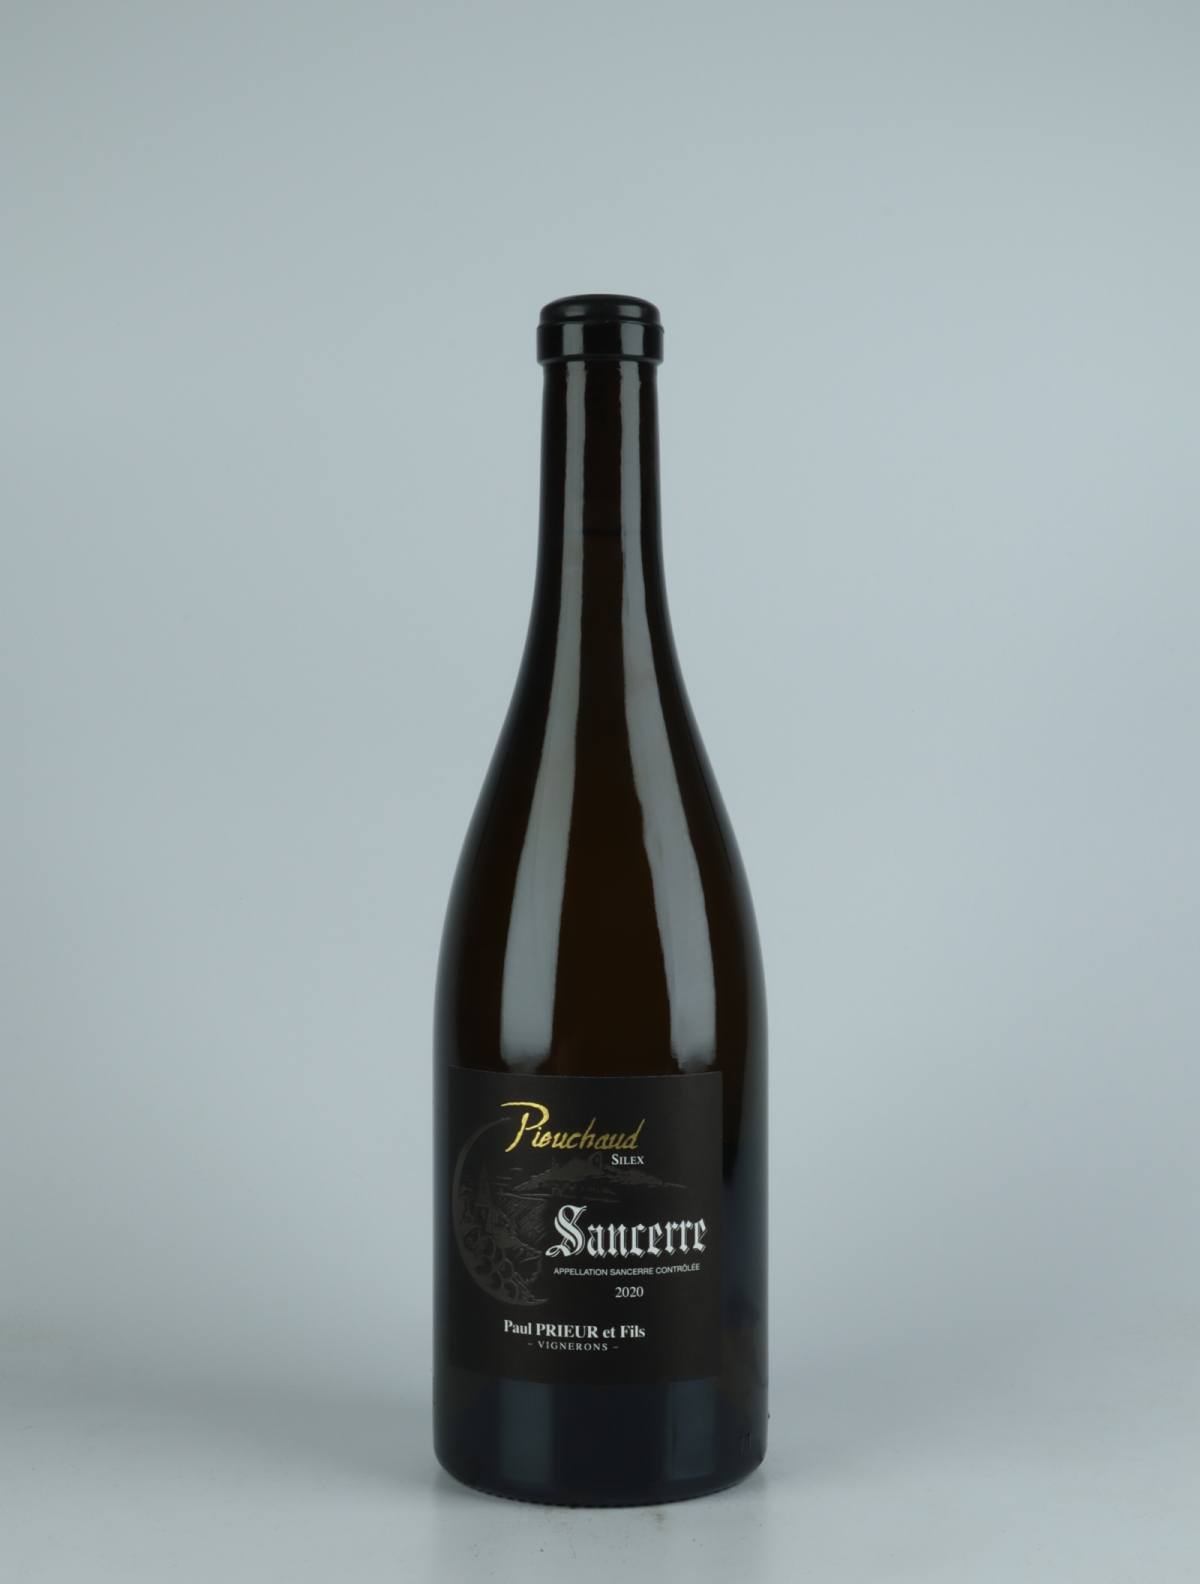 A bottle 2020 Sancerre - Pieuchaud Silex White wine from Paul Prieur et Fils, Loire in France